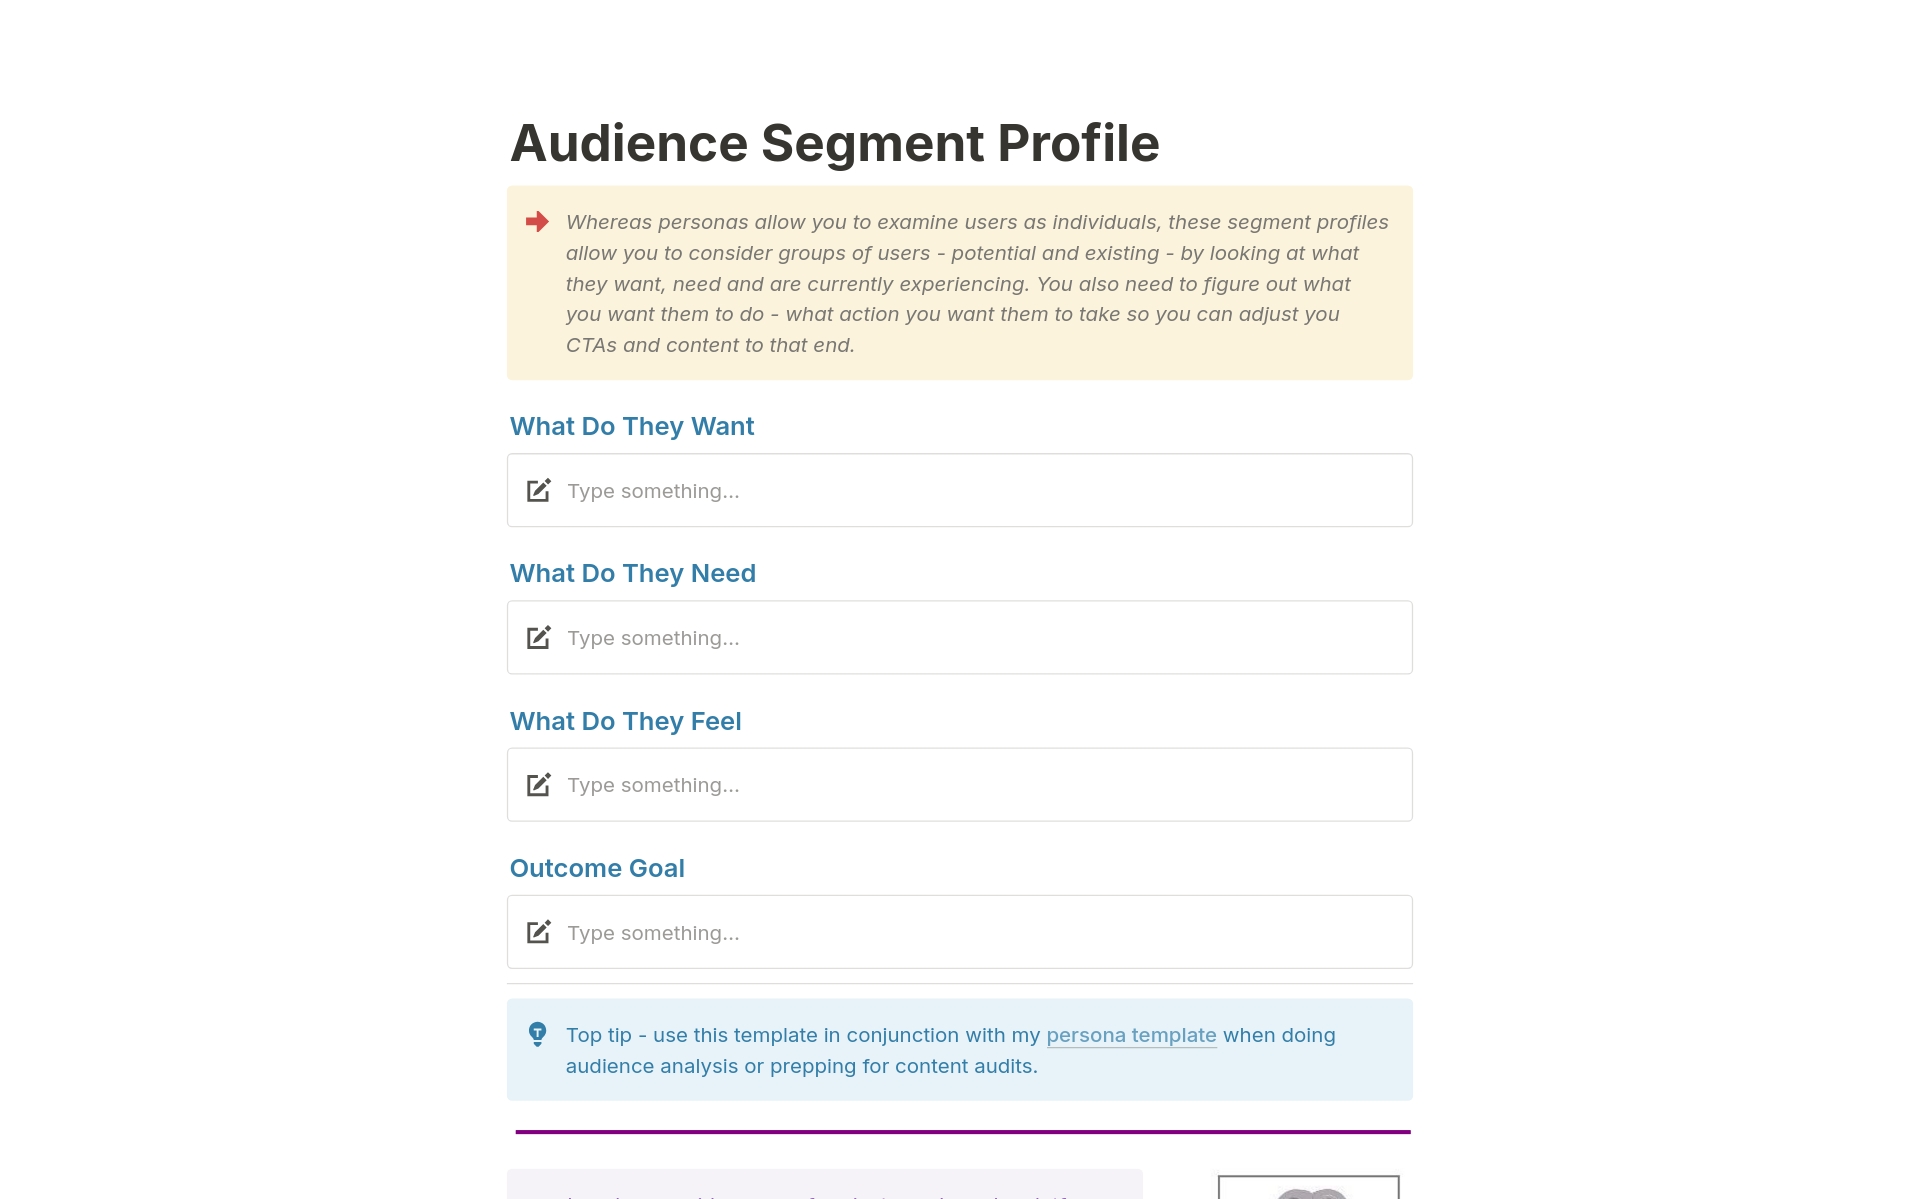 Vista previa de una plantilla para Audience Segment Profile